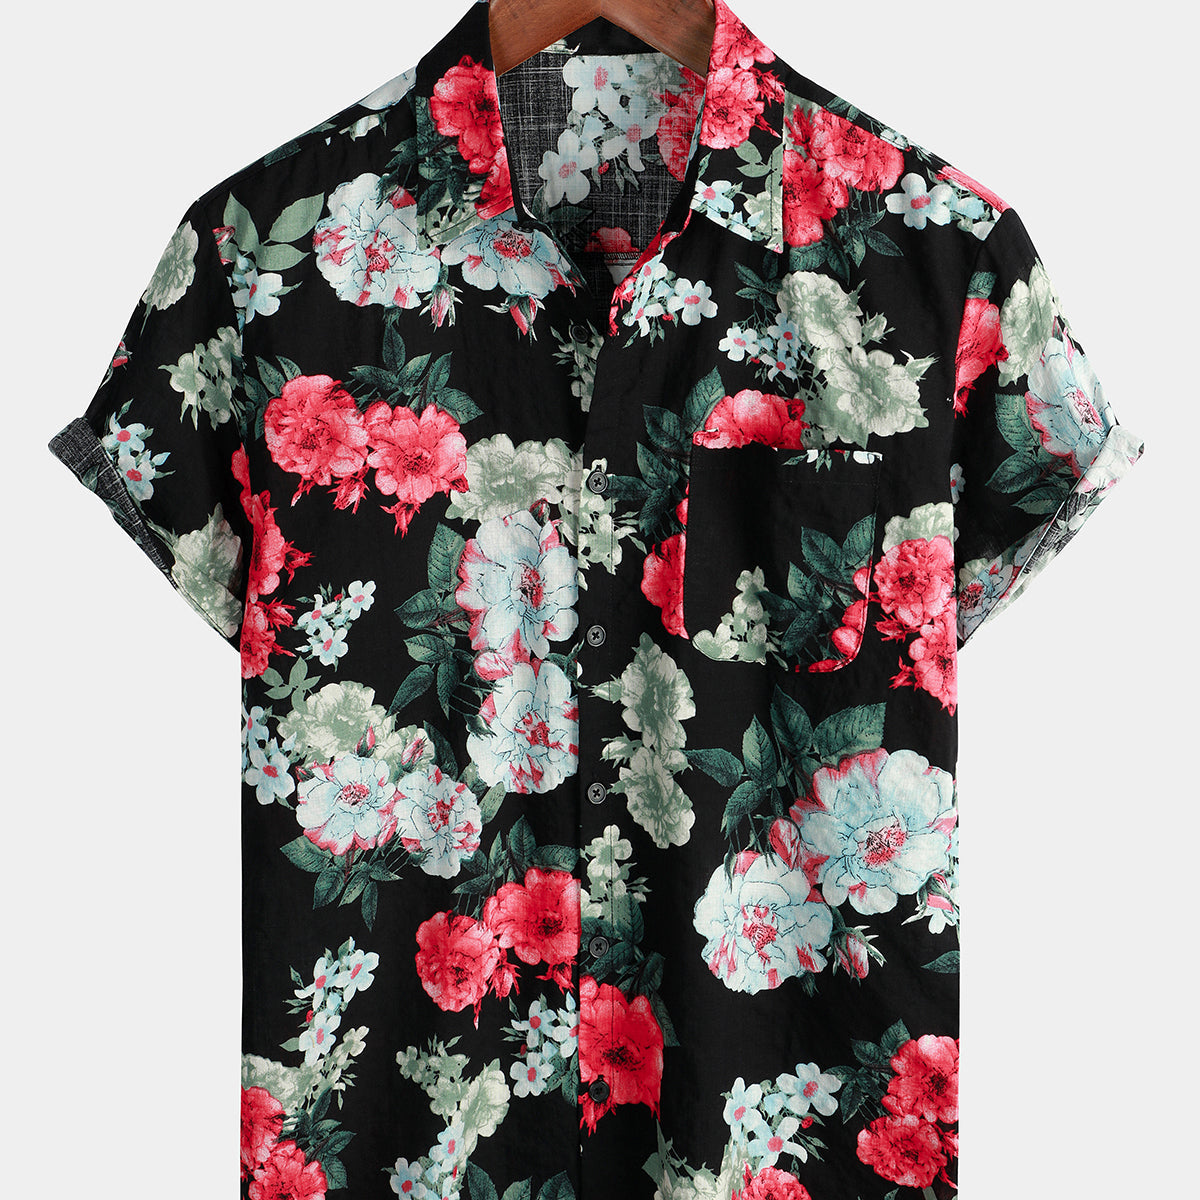 Men's Floral Print Black Pocket Vintage Flowers Short Sleeve Cotton Summer Holiday Shirt